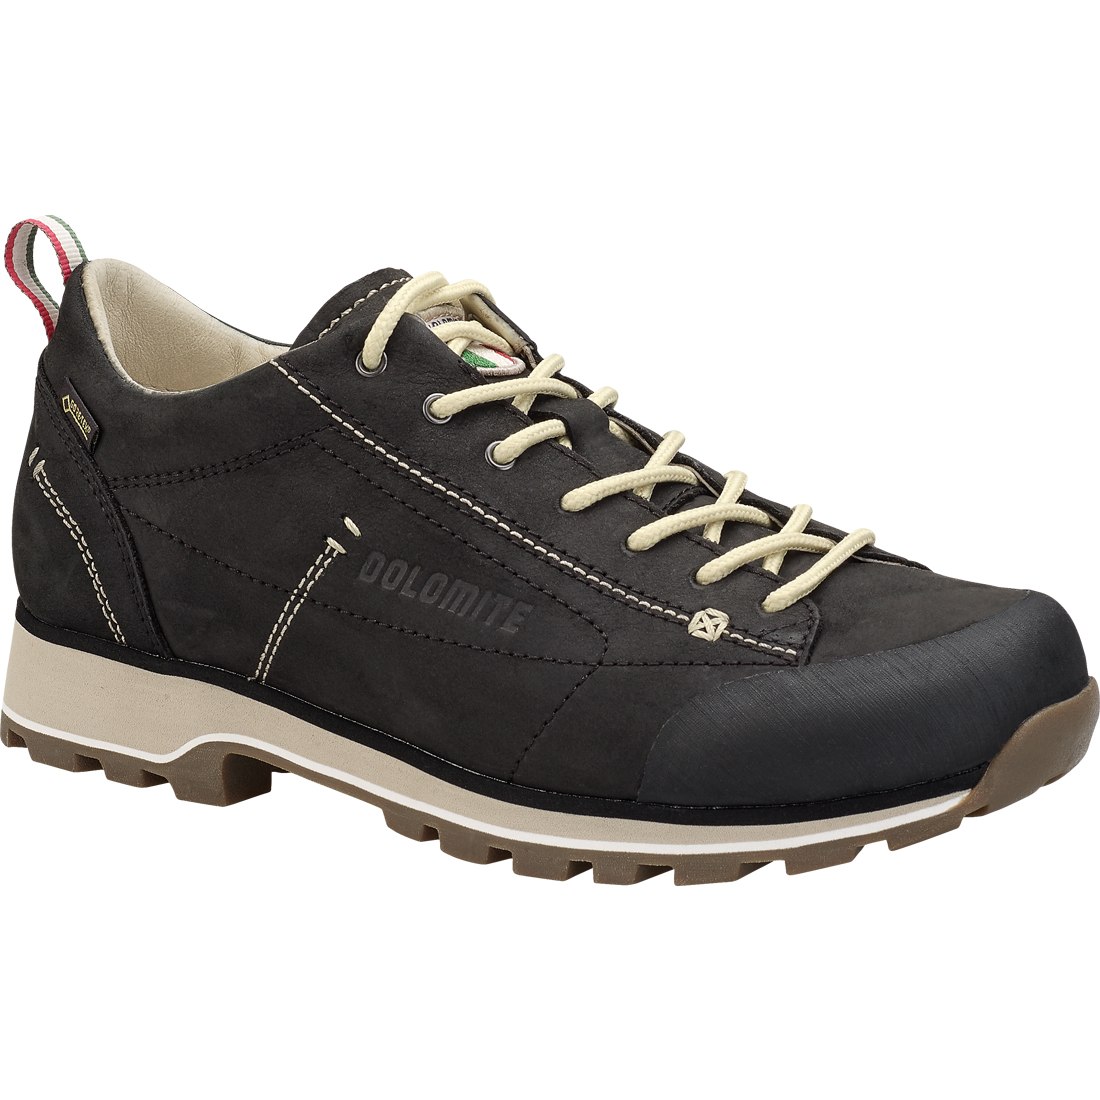 Produktbild von Dolomite 54 Low FG GTX Schuhe Damen - black